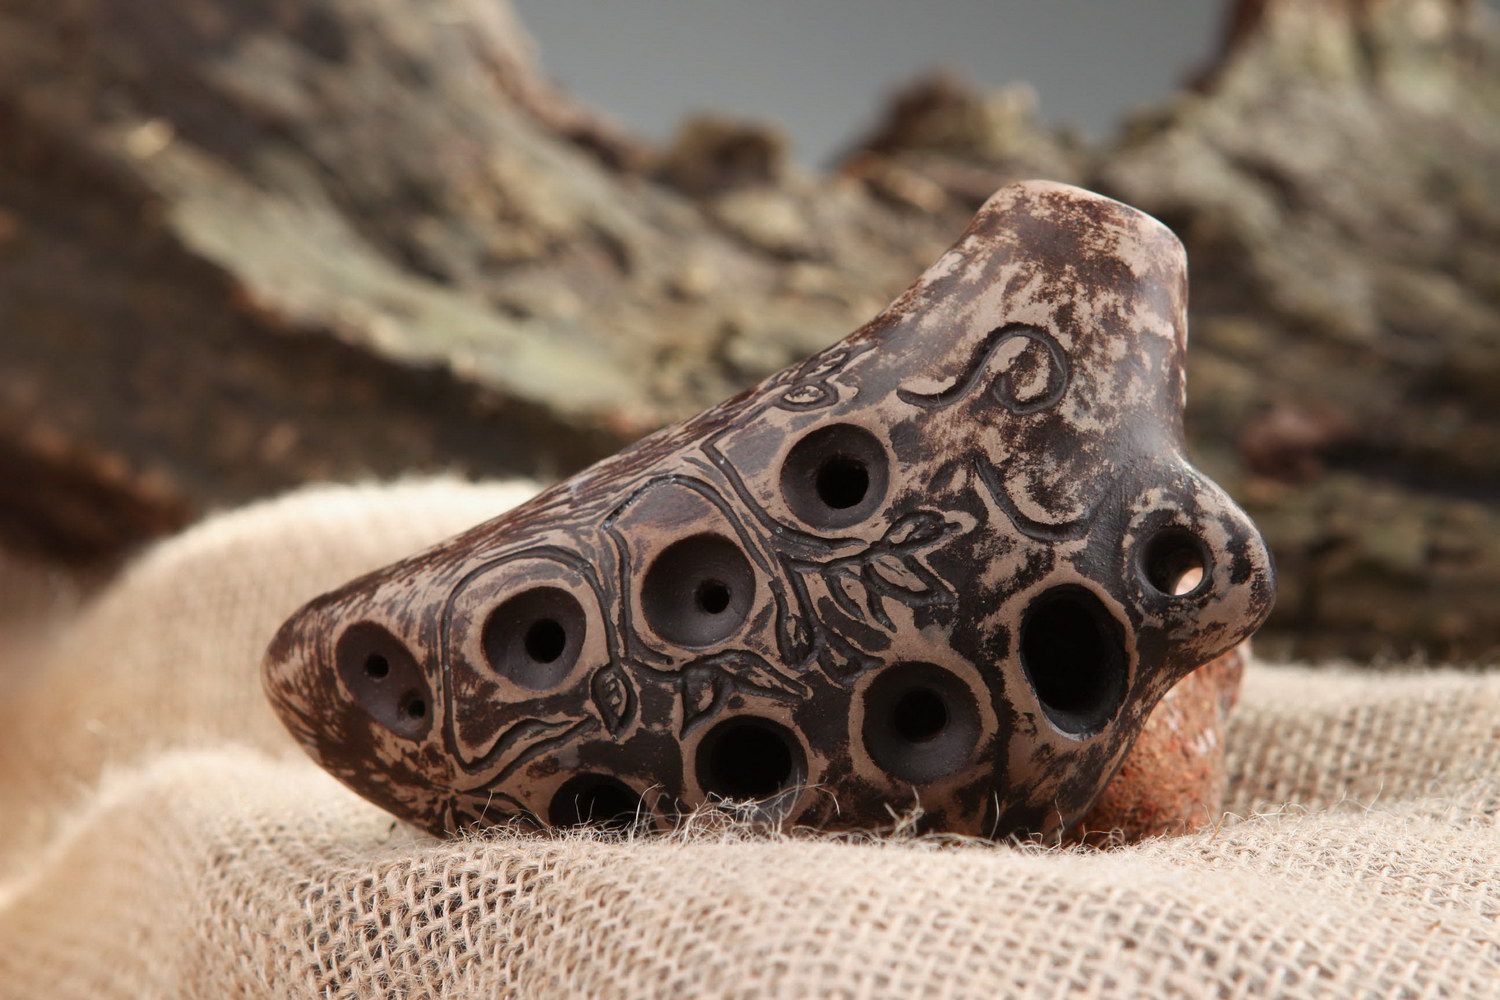 Ocarina, globular flute made of clay photo 1